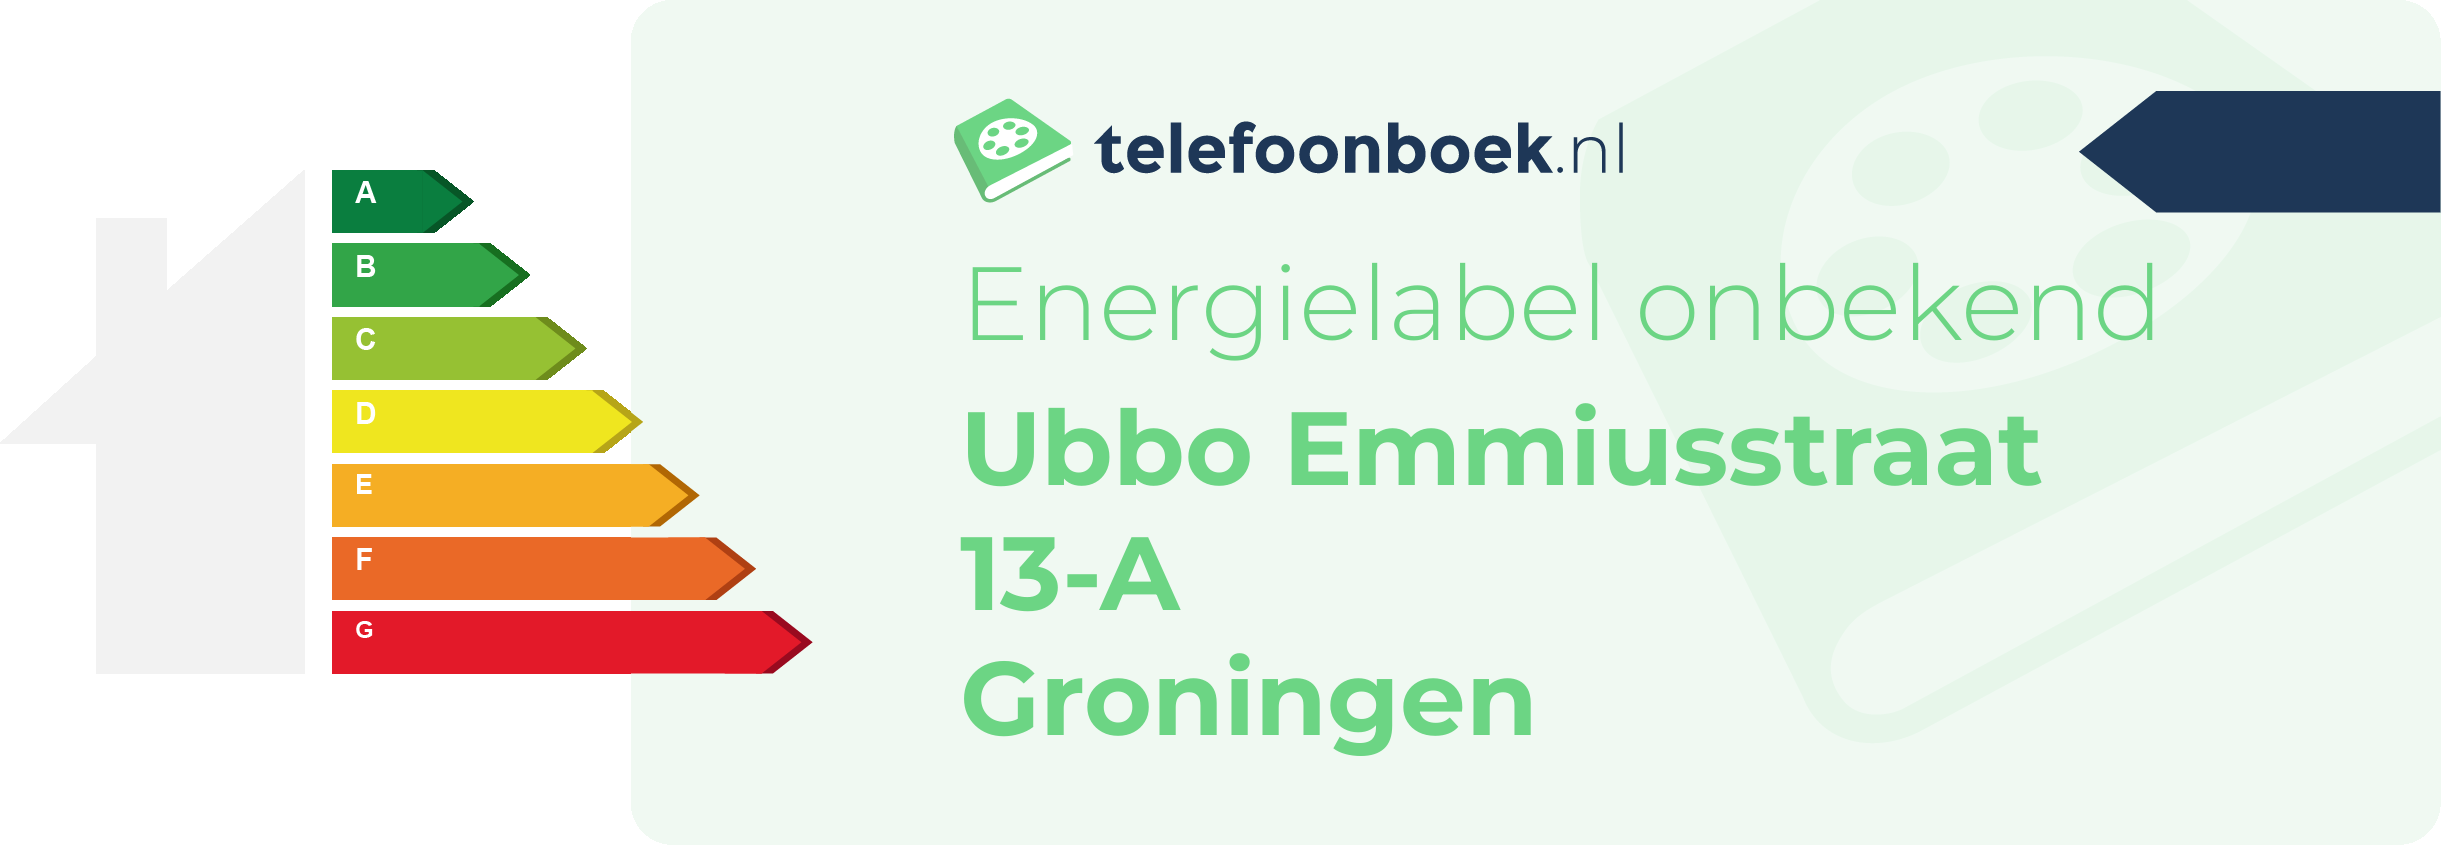 Energielabel Ubbo Emmiusstraat 13-A Groningen